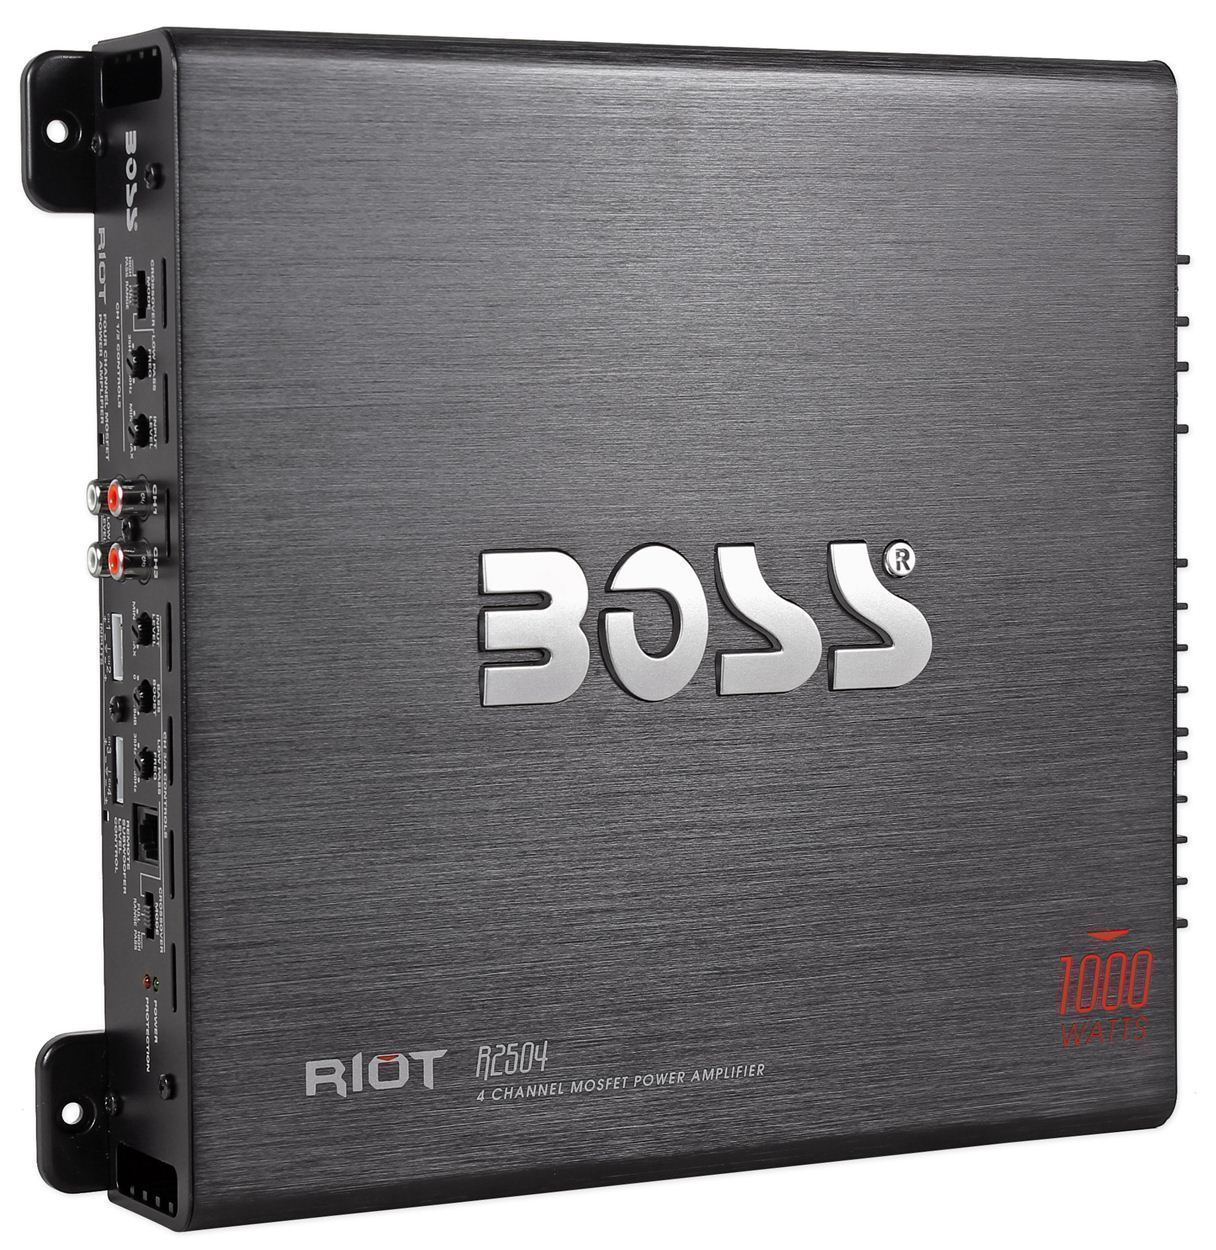  Boss  R2504 1000  Watt  4 Channel Car Audio Power Amplifier  